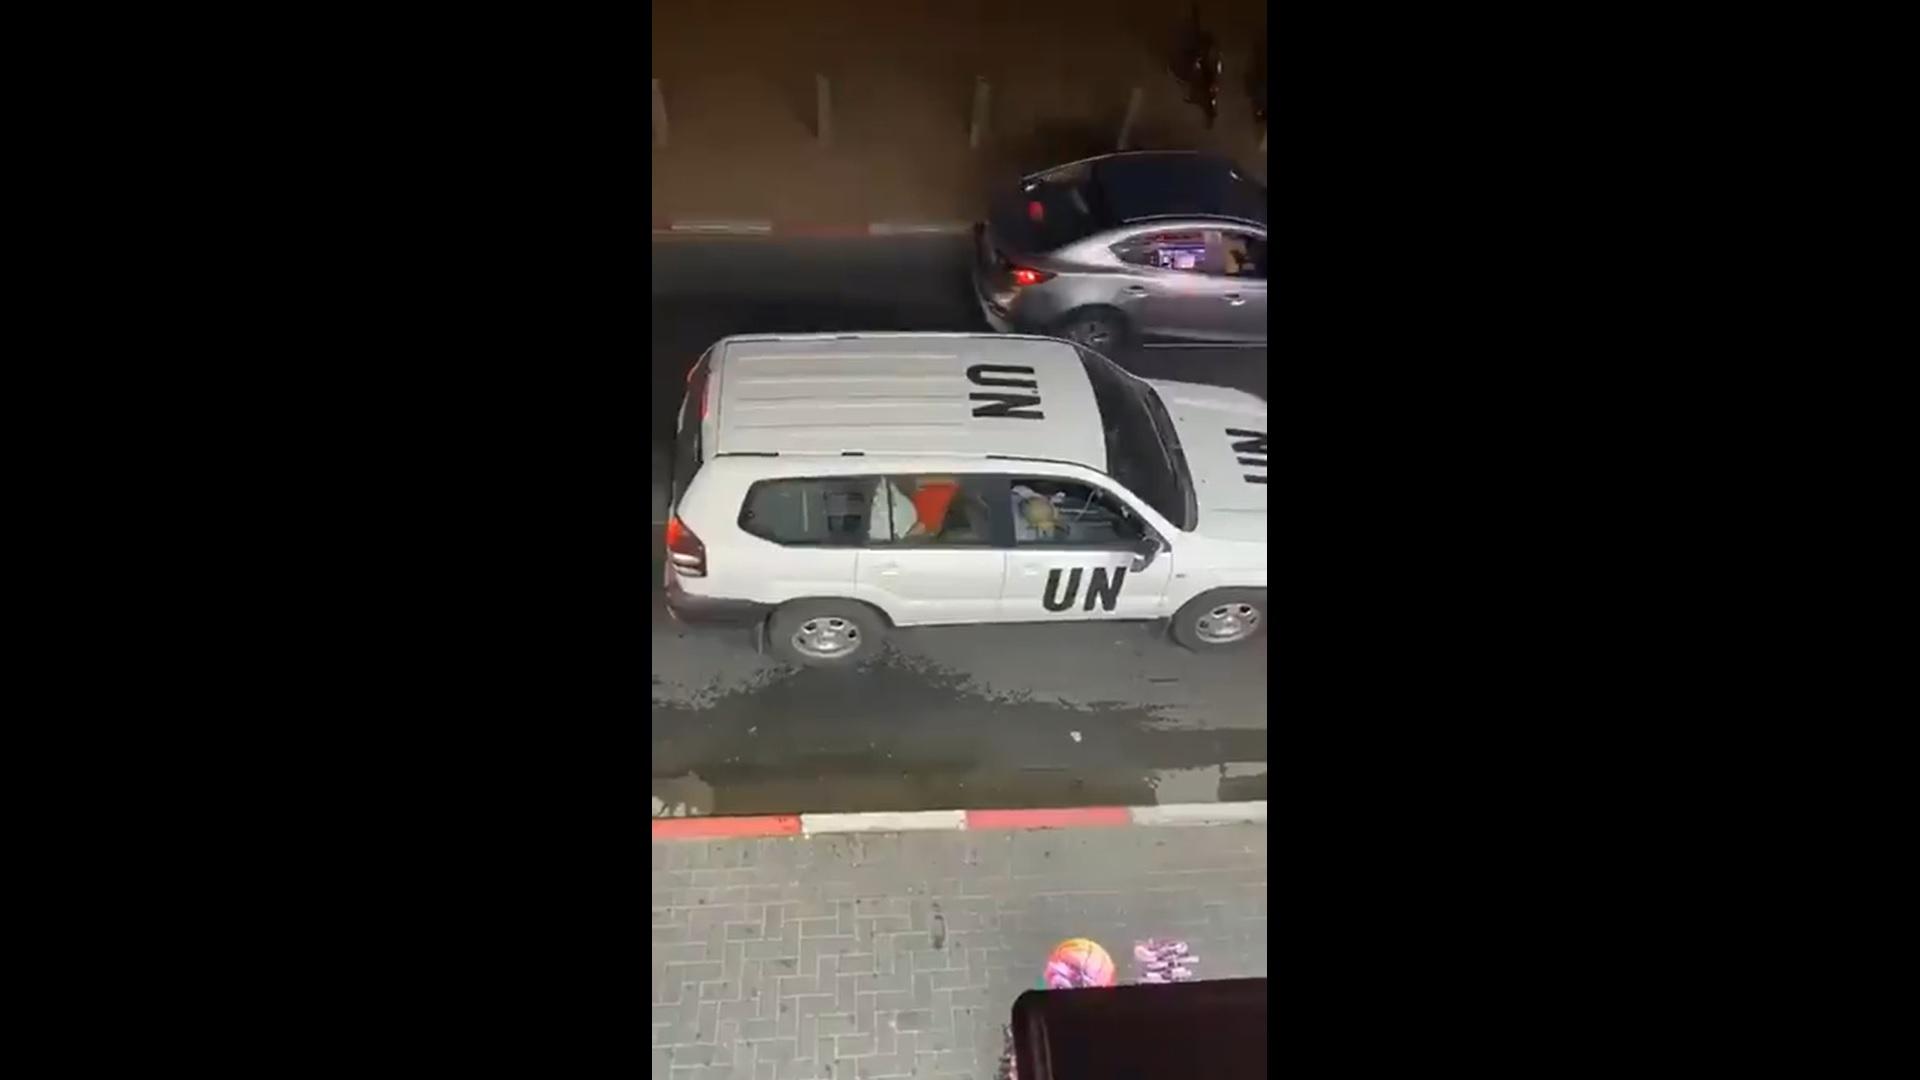 Una pareja practica sexo en un vehículo oficial de la ONU / Twitter